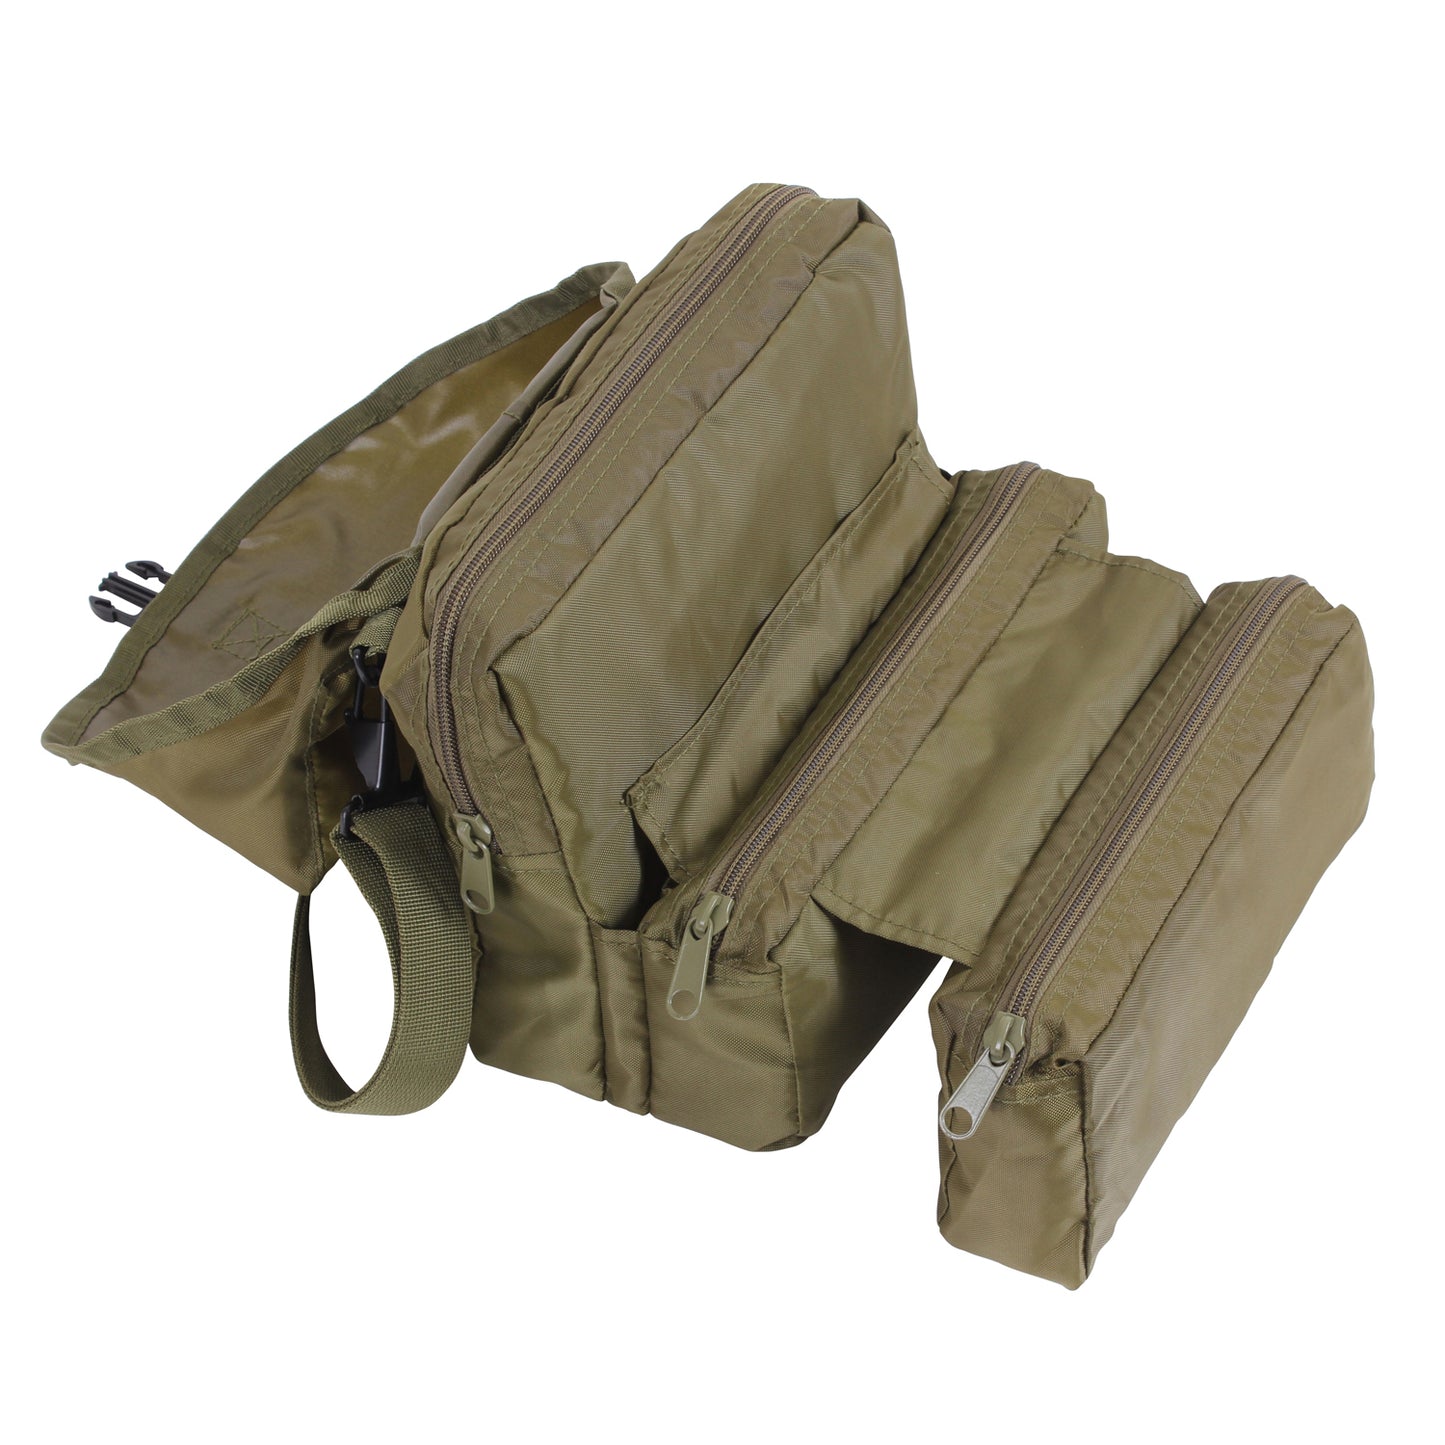 G.I. Style Medical Kit Bag (Each) Olive Drab bag